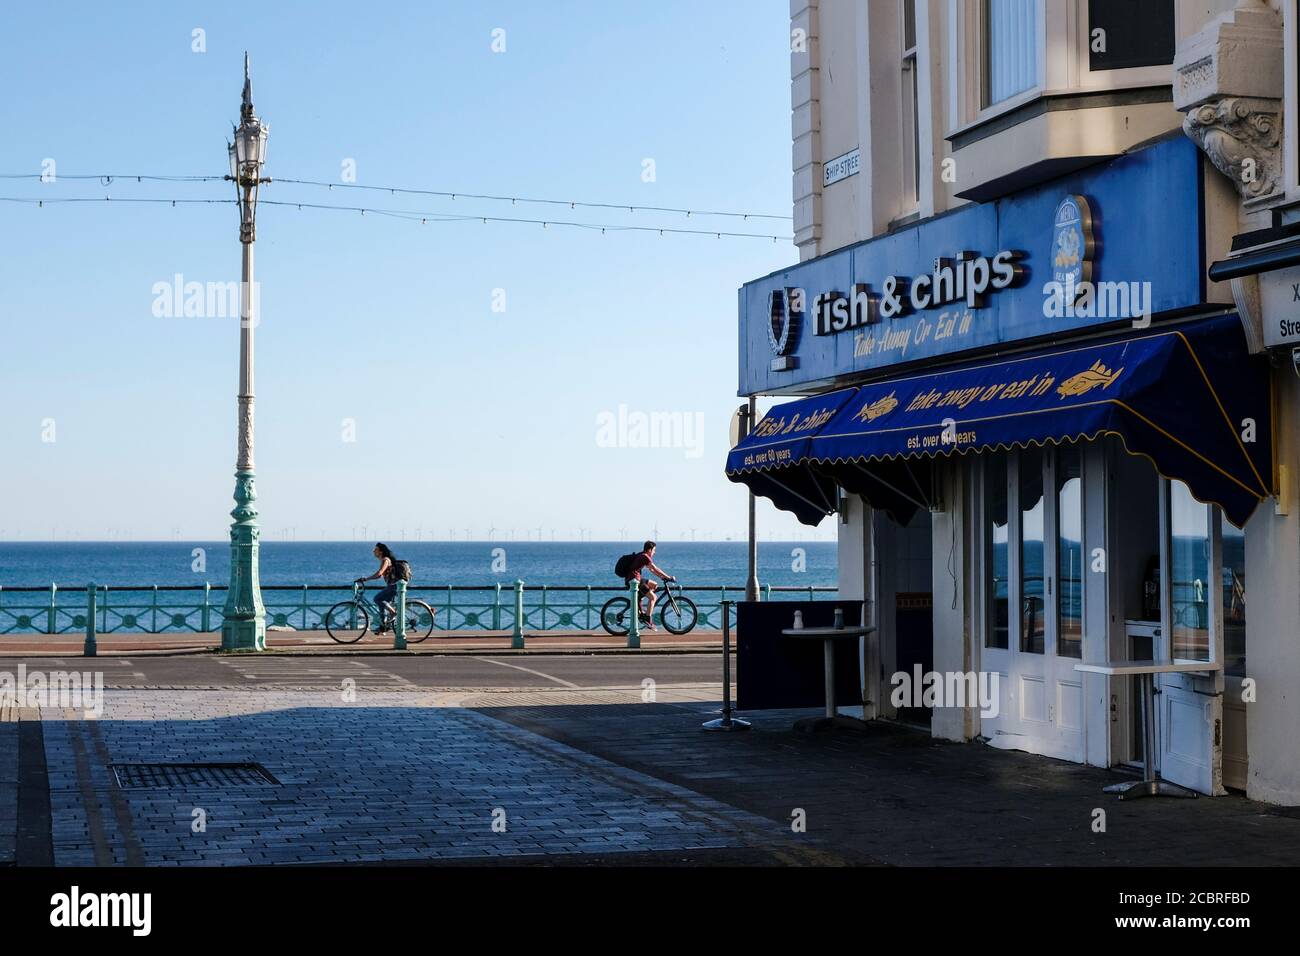 Pescaderías y patatas fritas en el paseo marítimo de Brighton durante el cierre. Día de verano con la tienda en el lado izquierdo, el mar y dos ciclistas en el fondo. Foto de stock